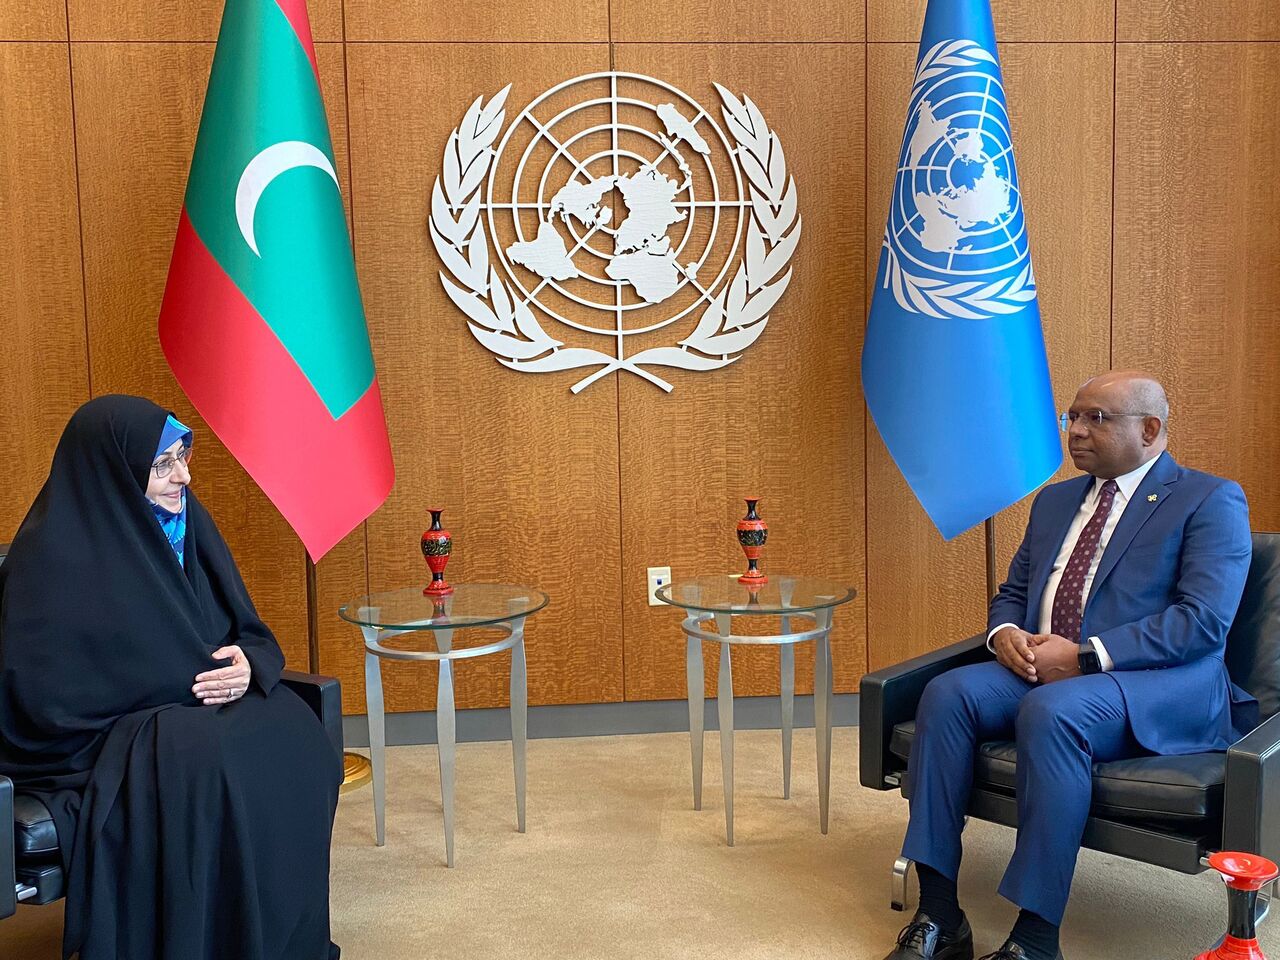 پرچم مالدیو بجای پرچم ایران در دیدار خانم خزعلی با مقام سازمان ملل؟! + توضیحات